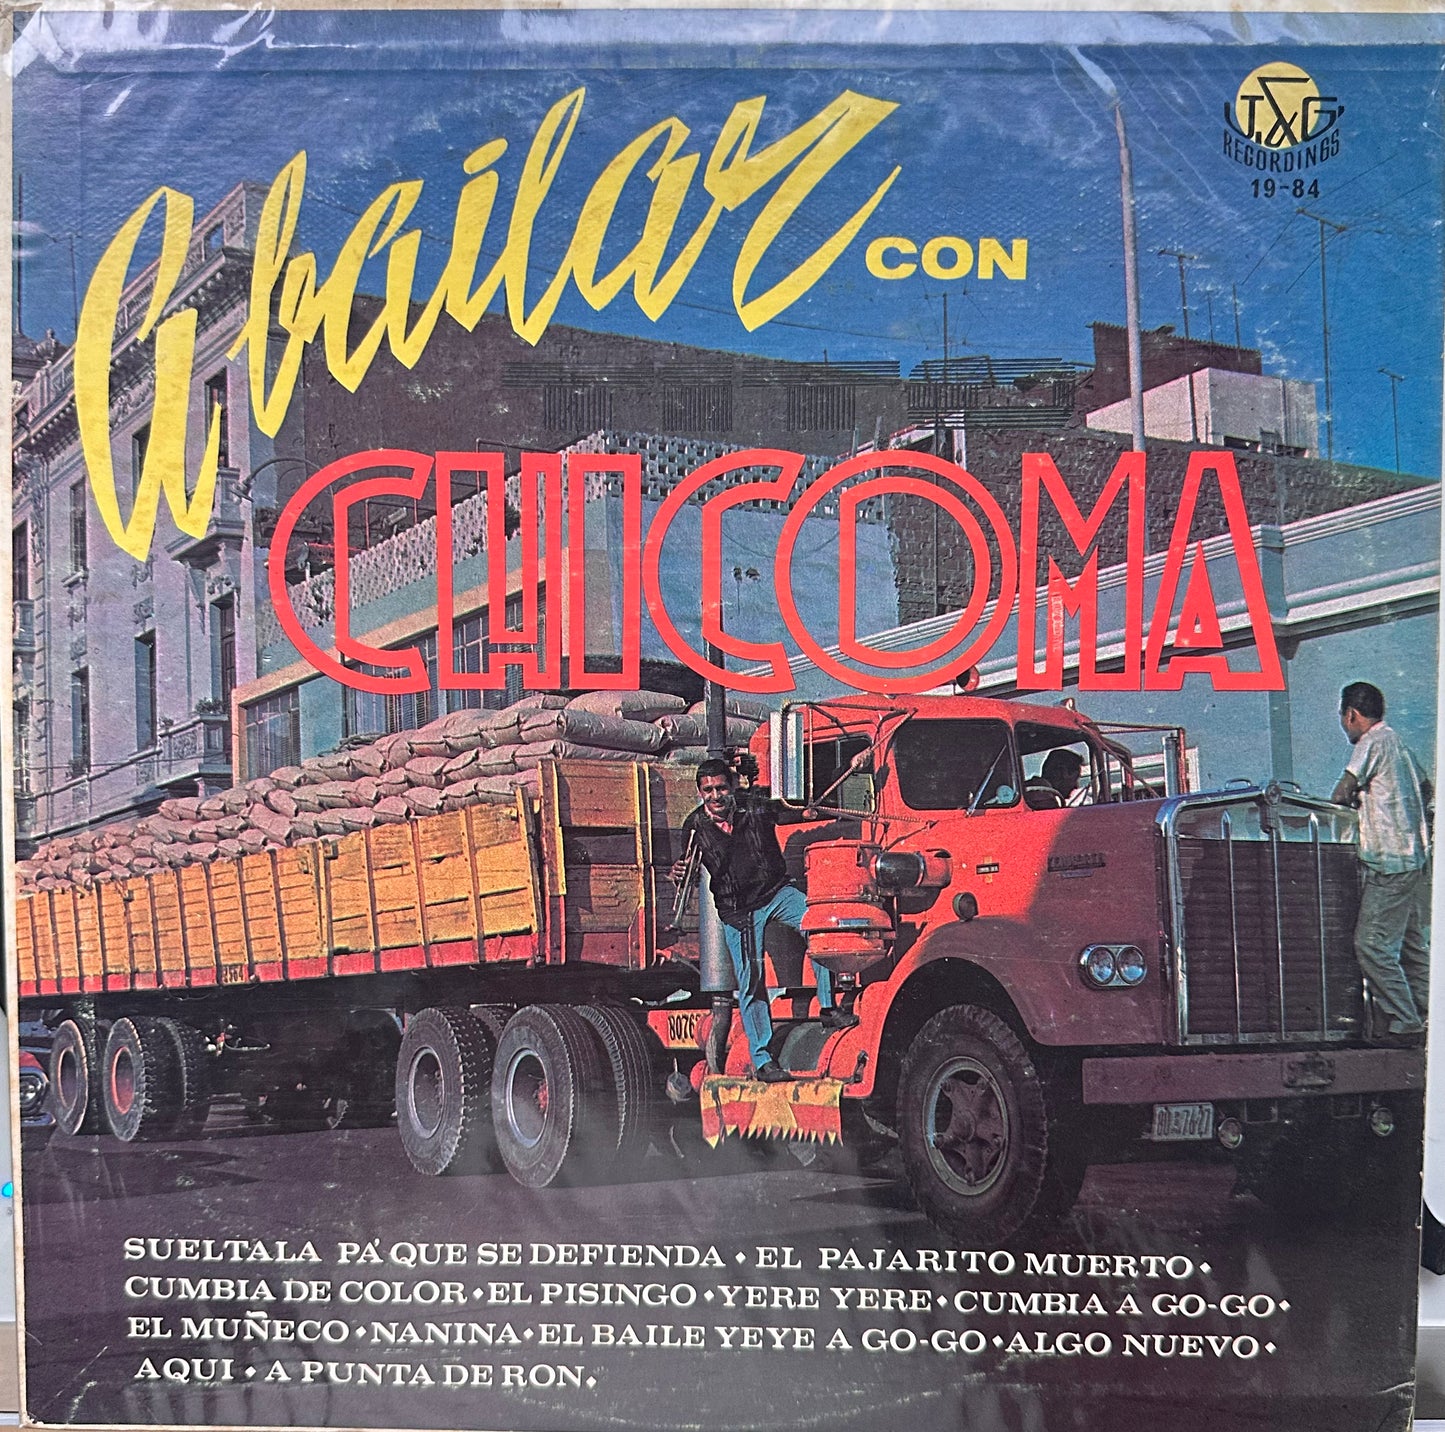 A Bailar con Chicoma - Tito Chicoma